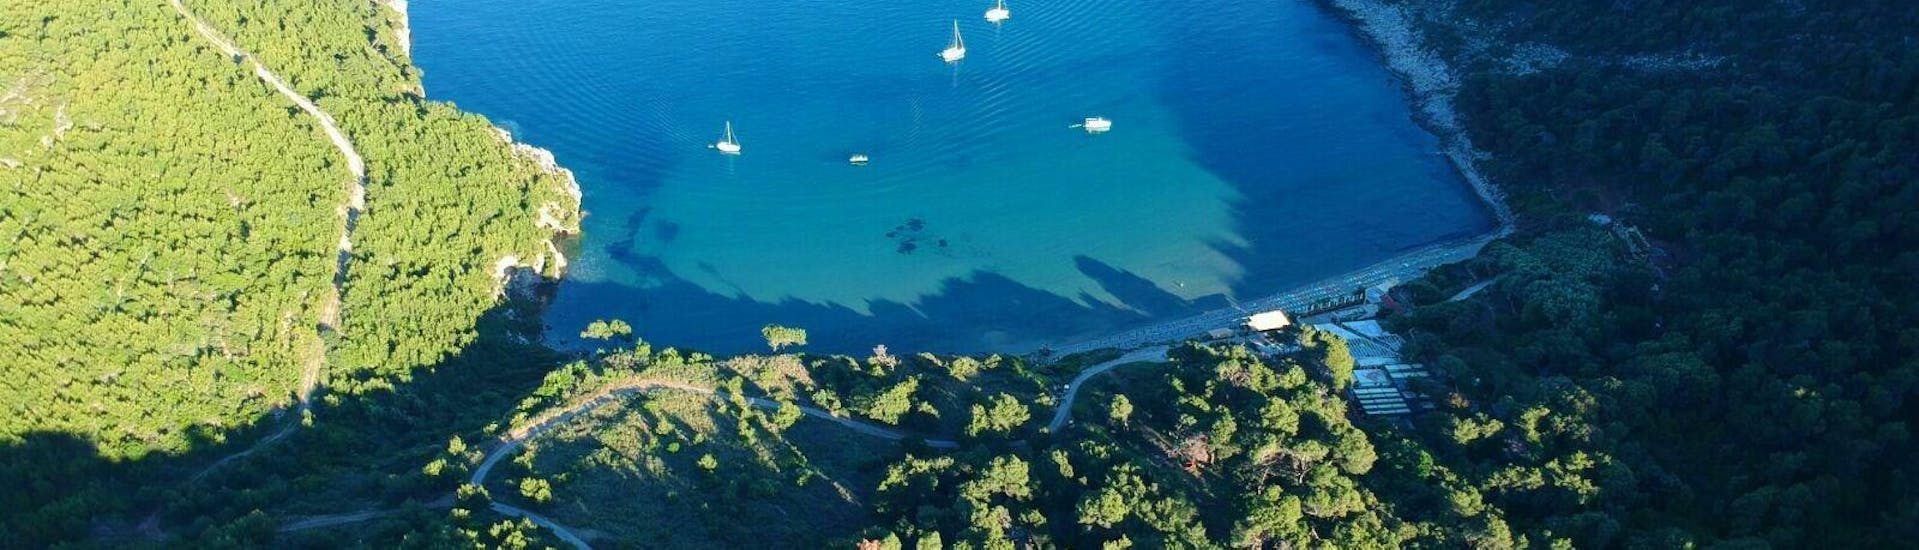 Een adembenemend uitzicht op ongerepte landschappen waar de toeristen van kunnen genieten tijdens de privéboot (4pax) naar de Elafit-eilanden met snorkelen georganiseerd door Explore Dubrovnik per boot.